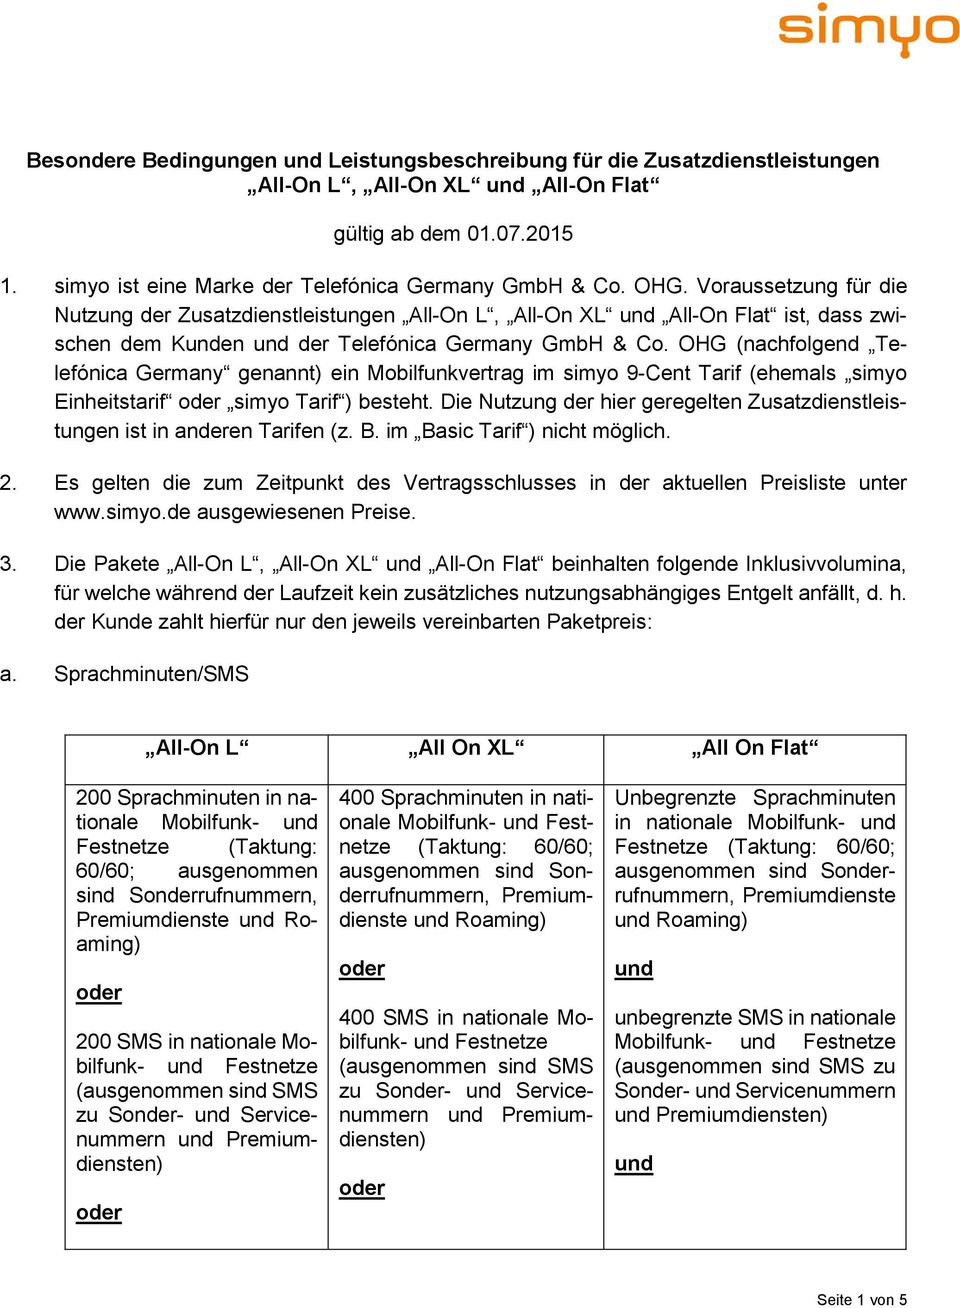 OHG (nachfolgend Telefónica Germany genannt) ein Mobilfunkvertrag im simyo 9-Cent Tarif (ehemals simyo Einheitstarif simyo Tarif ) besteht.